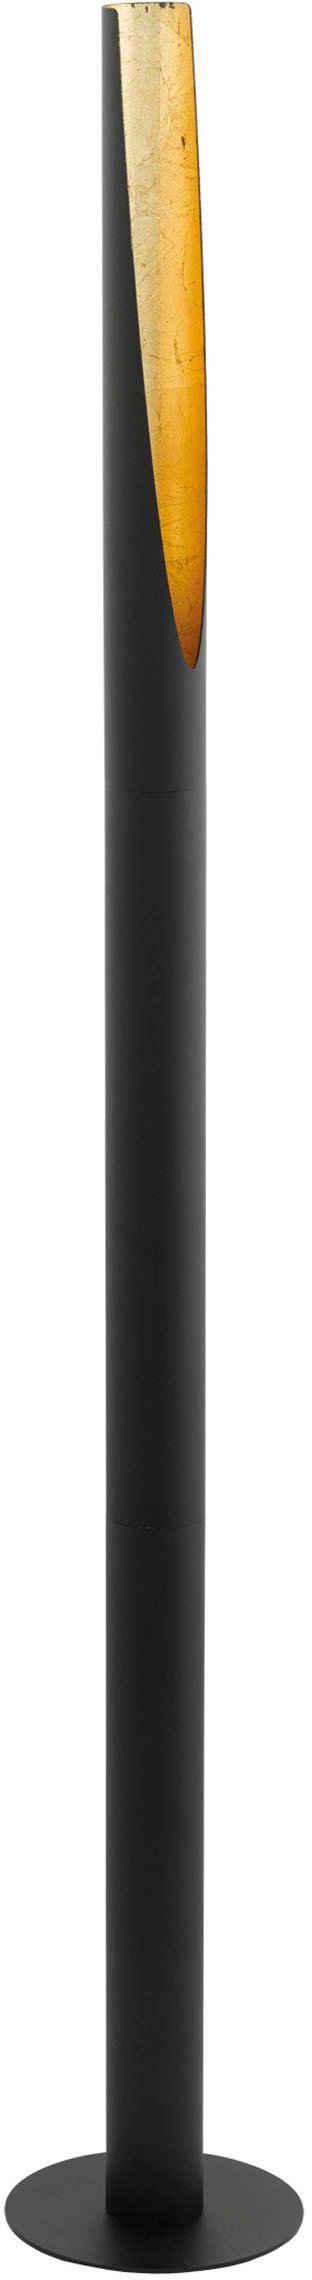 EGLO LED Stehlampe »BARBOTTO«, schwarz, gold / Ø6 x H137 cm / inkl. 1 x GU10 (je 4,5W, 400lm, 3000K) / warmweiße Lichtfarbe - aus Stahl - Stehlampe - Stehleuchte - Standlampe - Wohnzimmerlampe - Flurlampe - Lampe